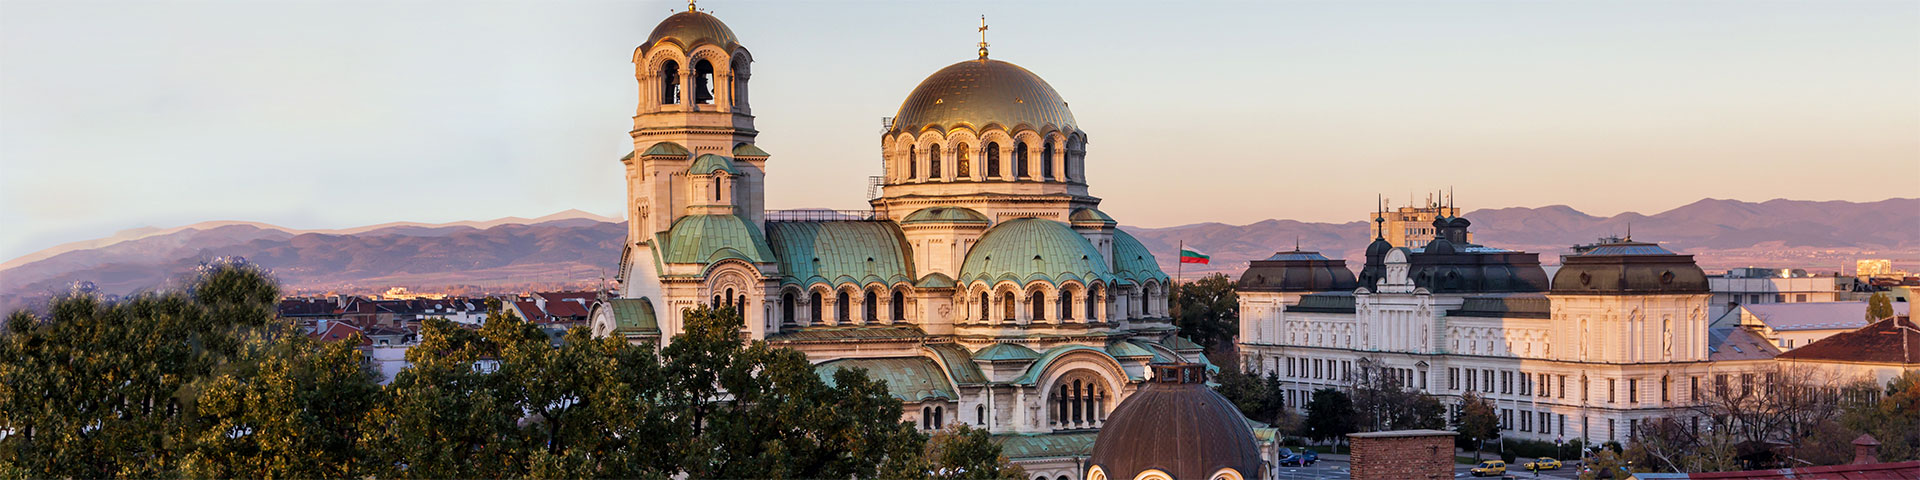 Bulgarische Übersetzung: Alexander Newski Kathedrale in Sofia, Hauptstadt von Bulgarien